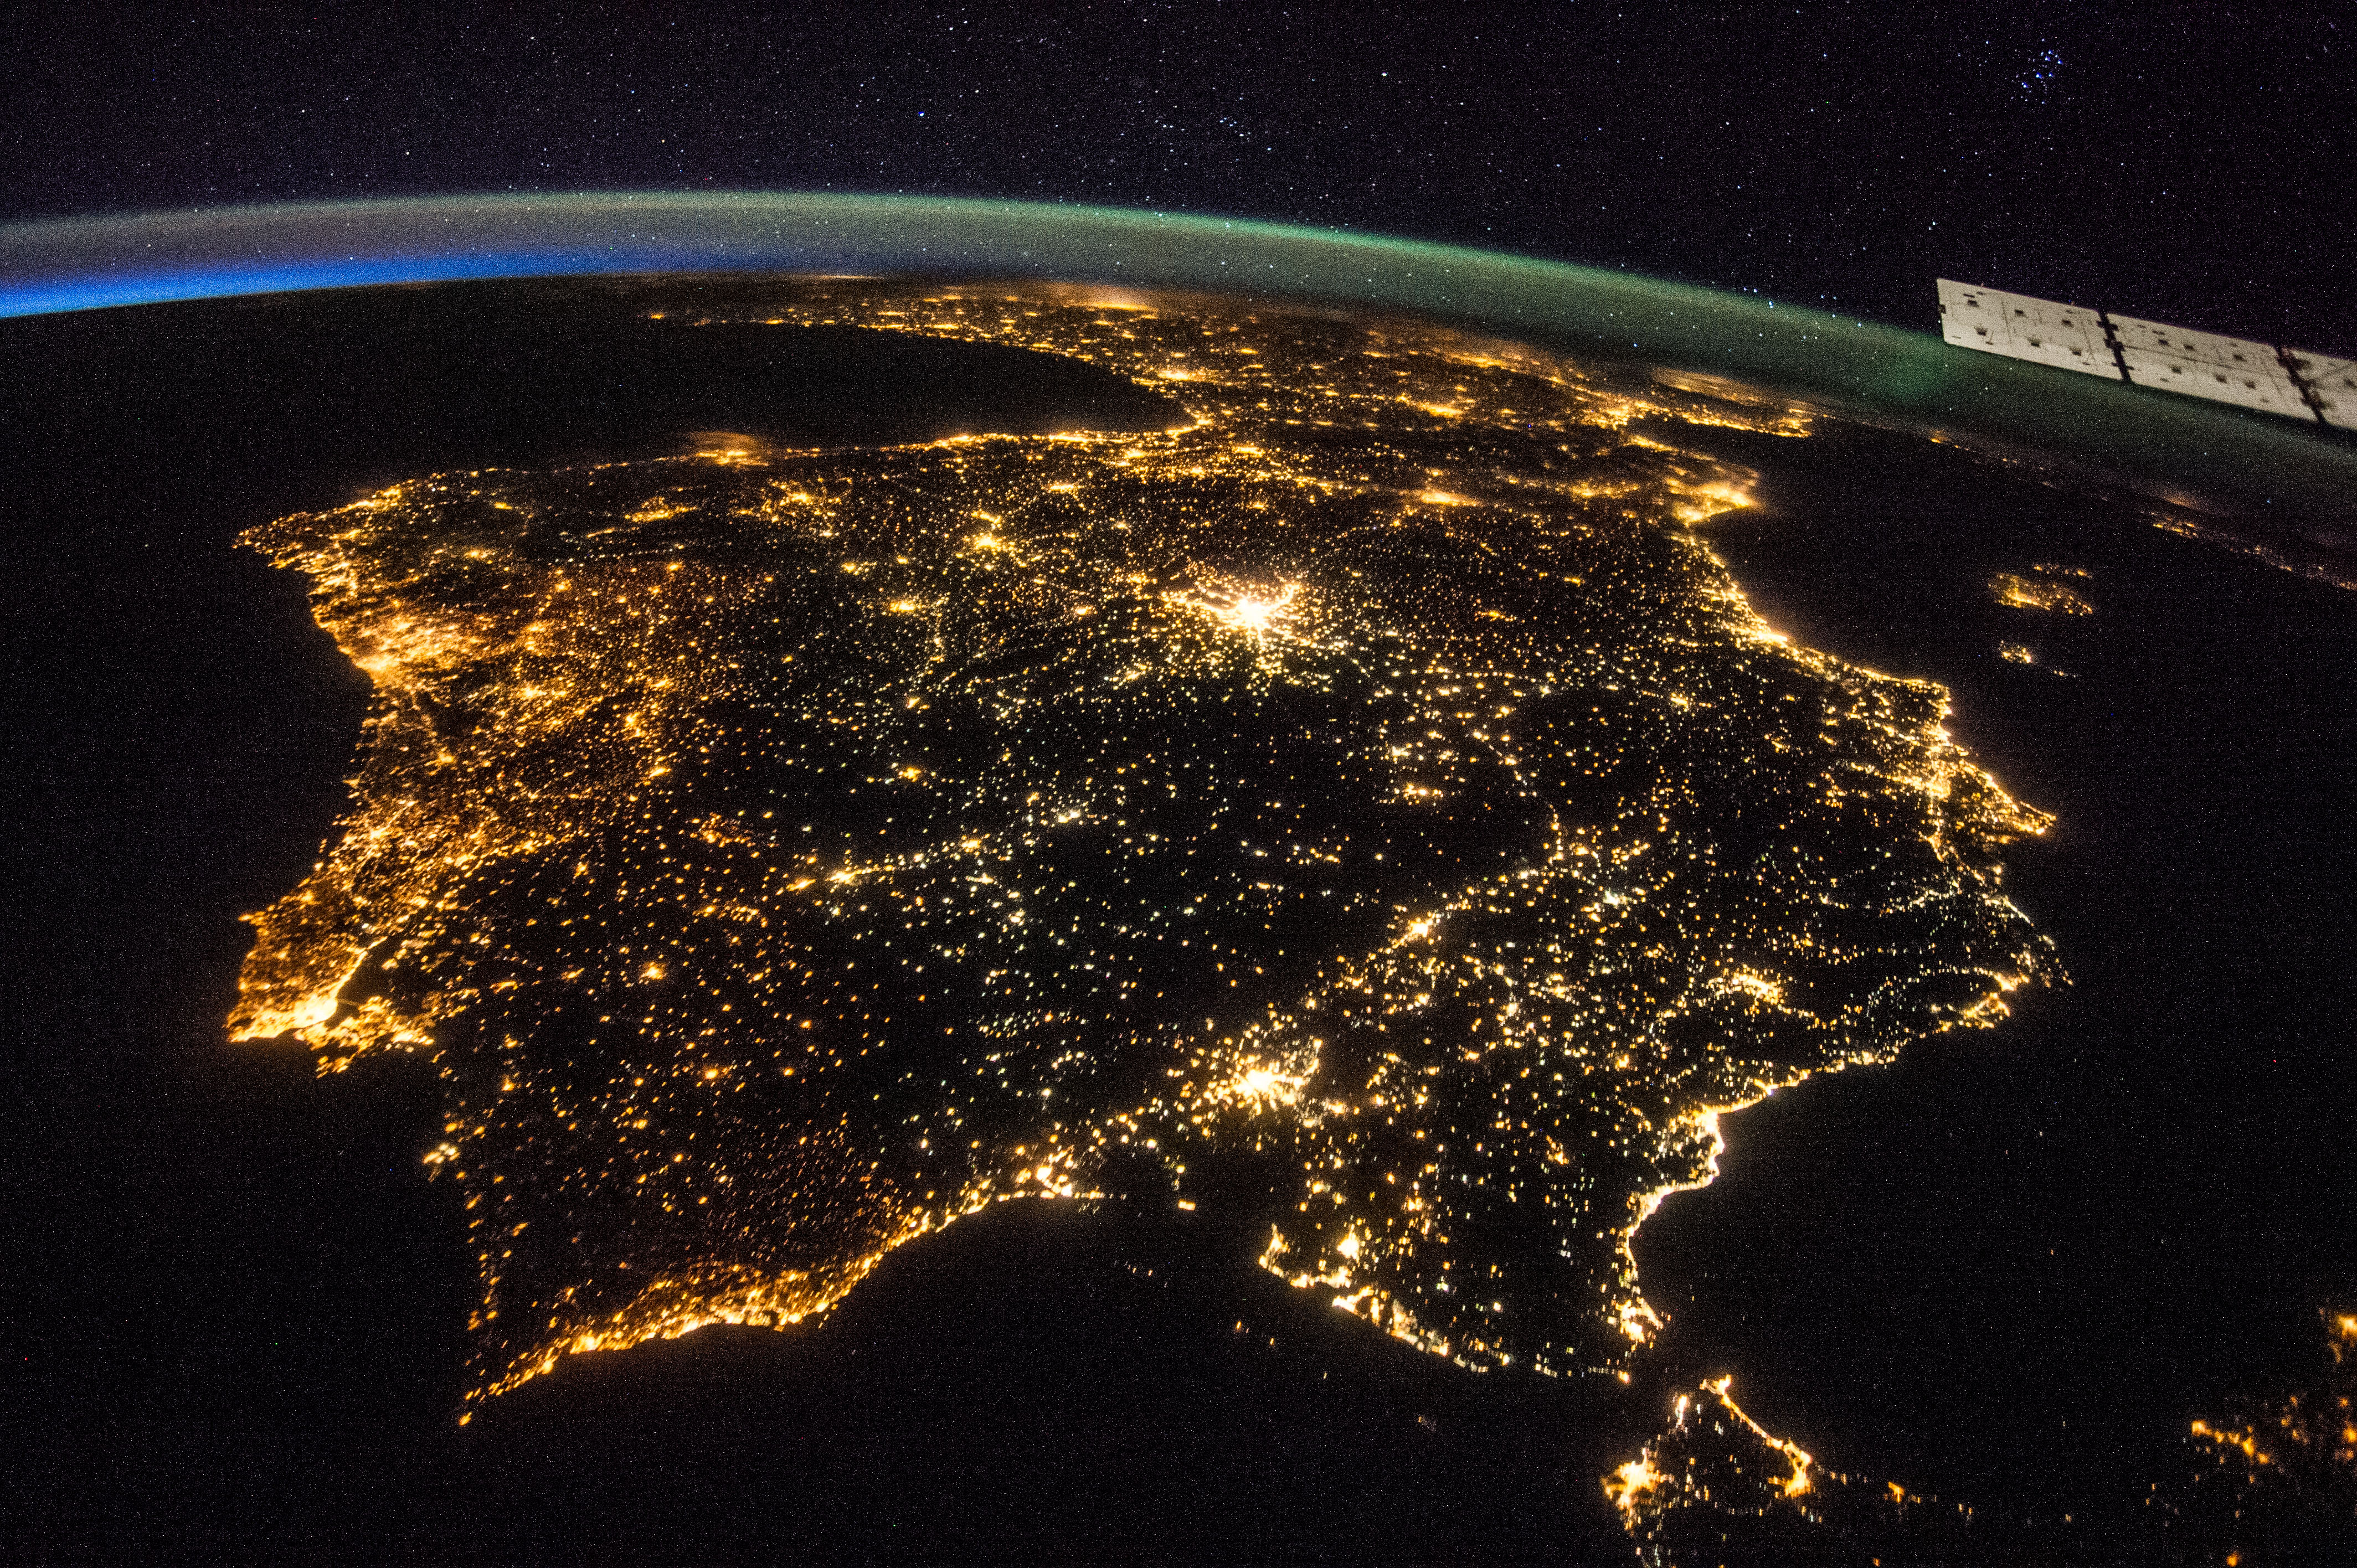 Обои реальном времени. Пиренейский полуостров из космоса. Северная Корея ночью из космоса. Северная Корея вид из космоса ночью. Снимки НАСА из космоса.